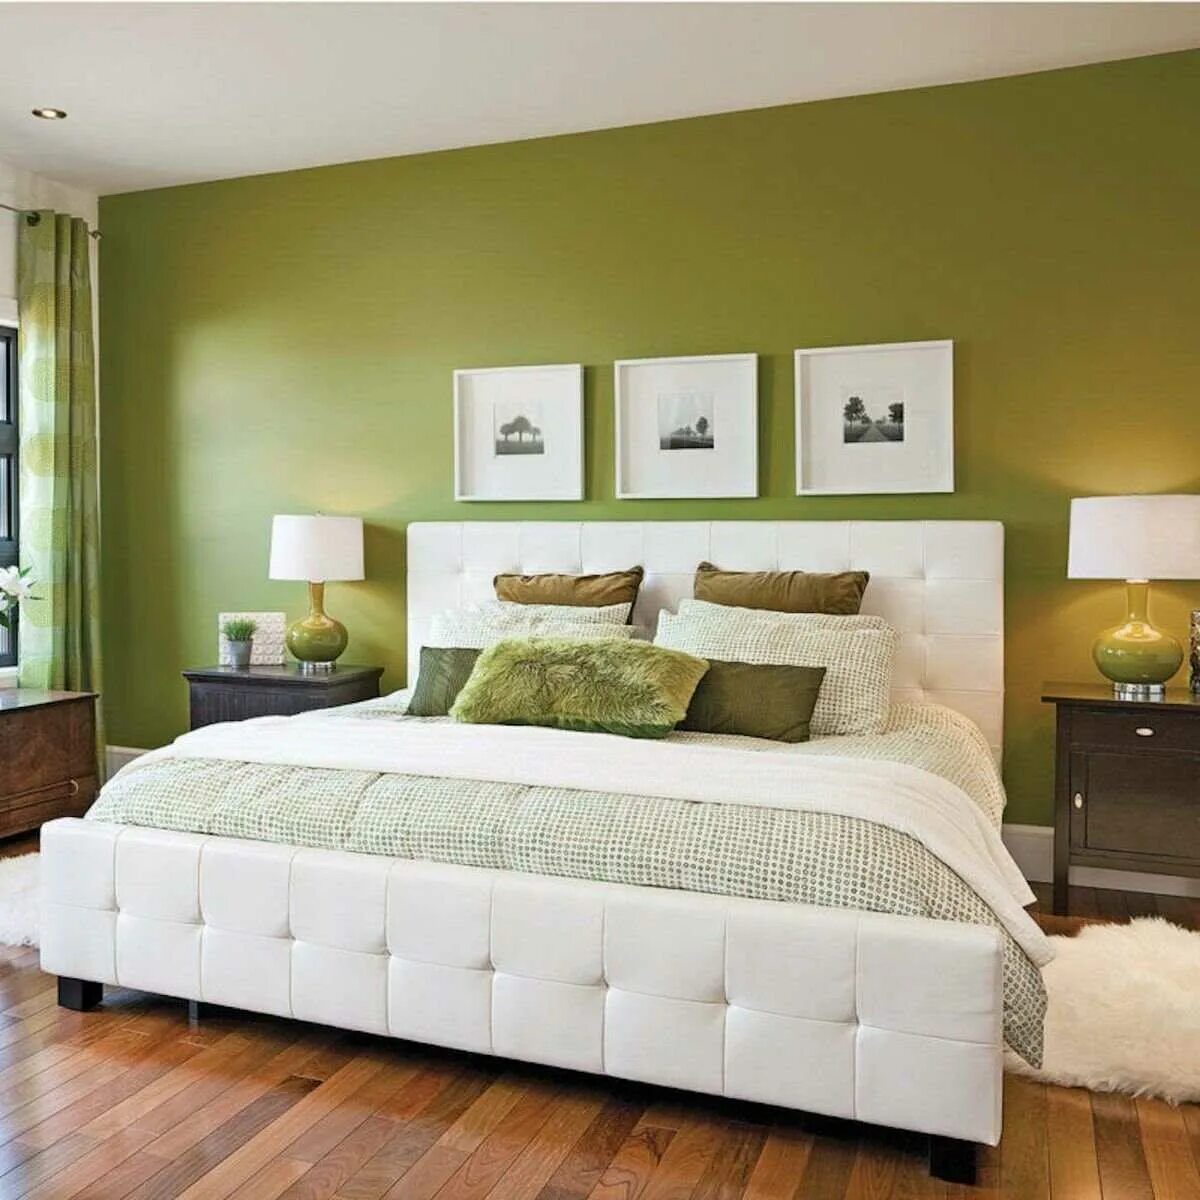 Какого цвета должна быть мебель. Спальня в Земляном цвете. Спальня в фисташковых тонах. Оливковый цвет в интерьере. Зеленая спальня.